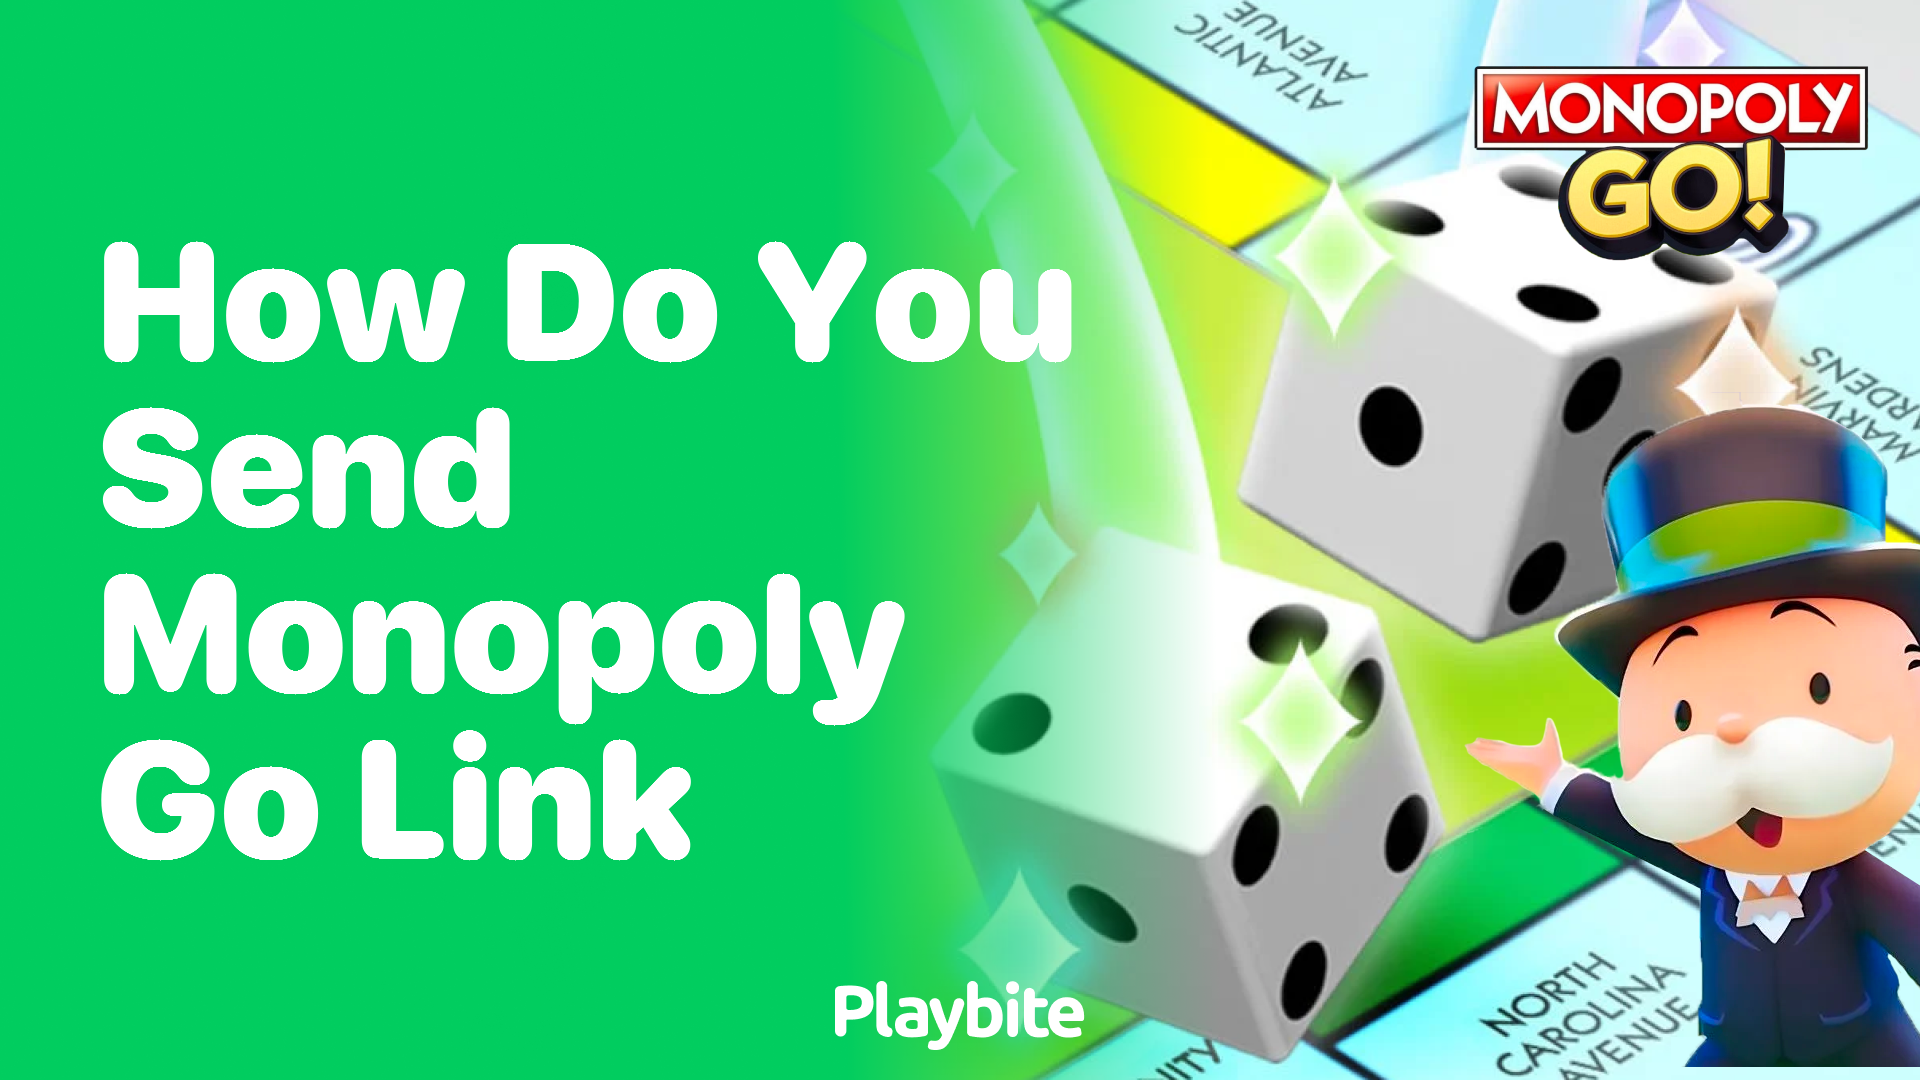 How Do You Send a Monopoly Go Link?